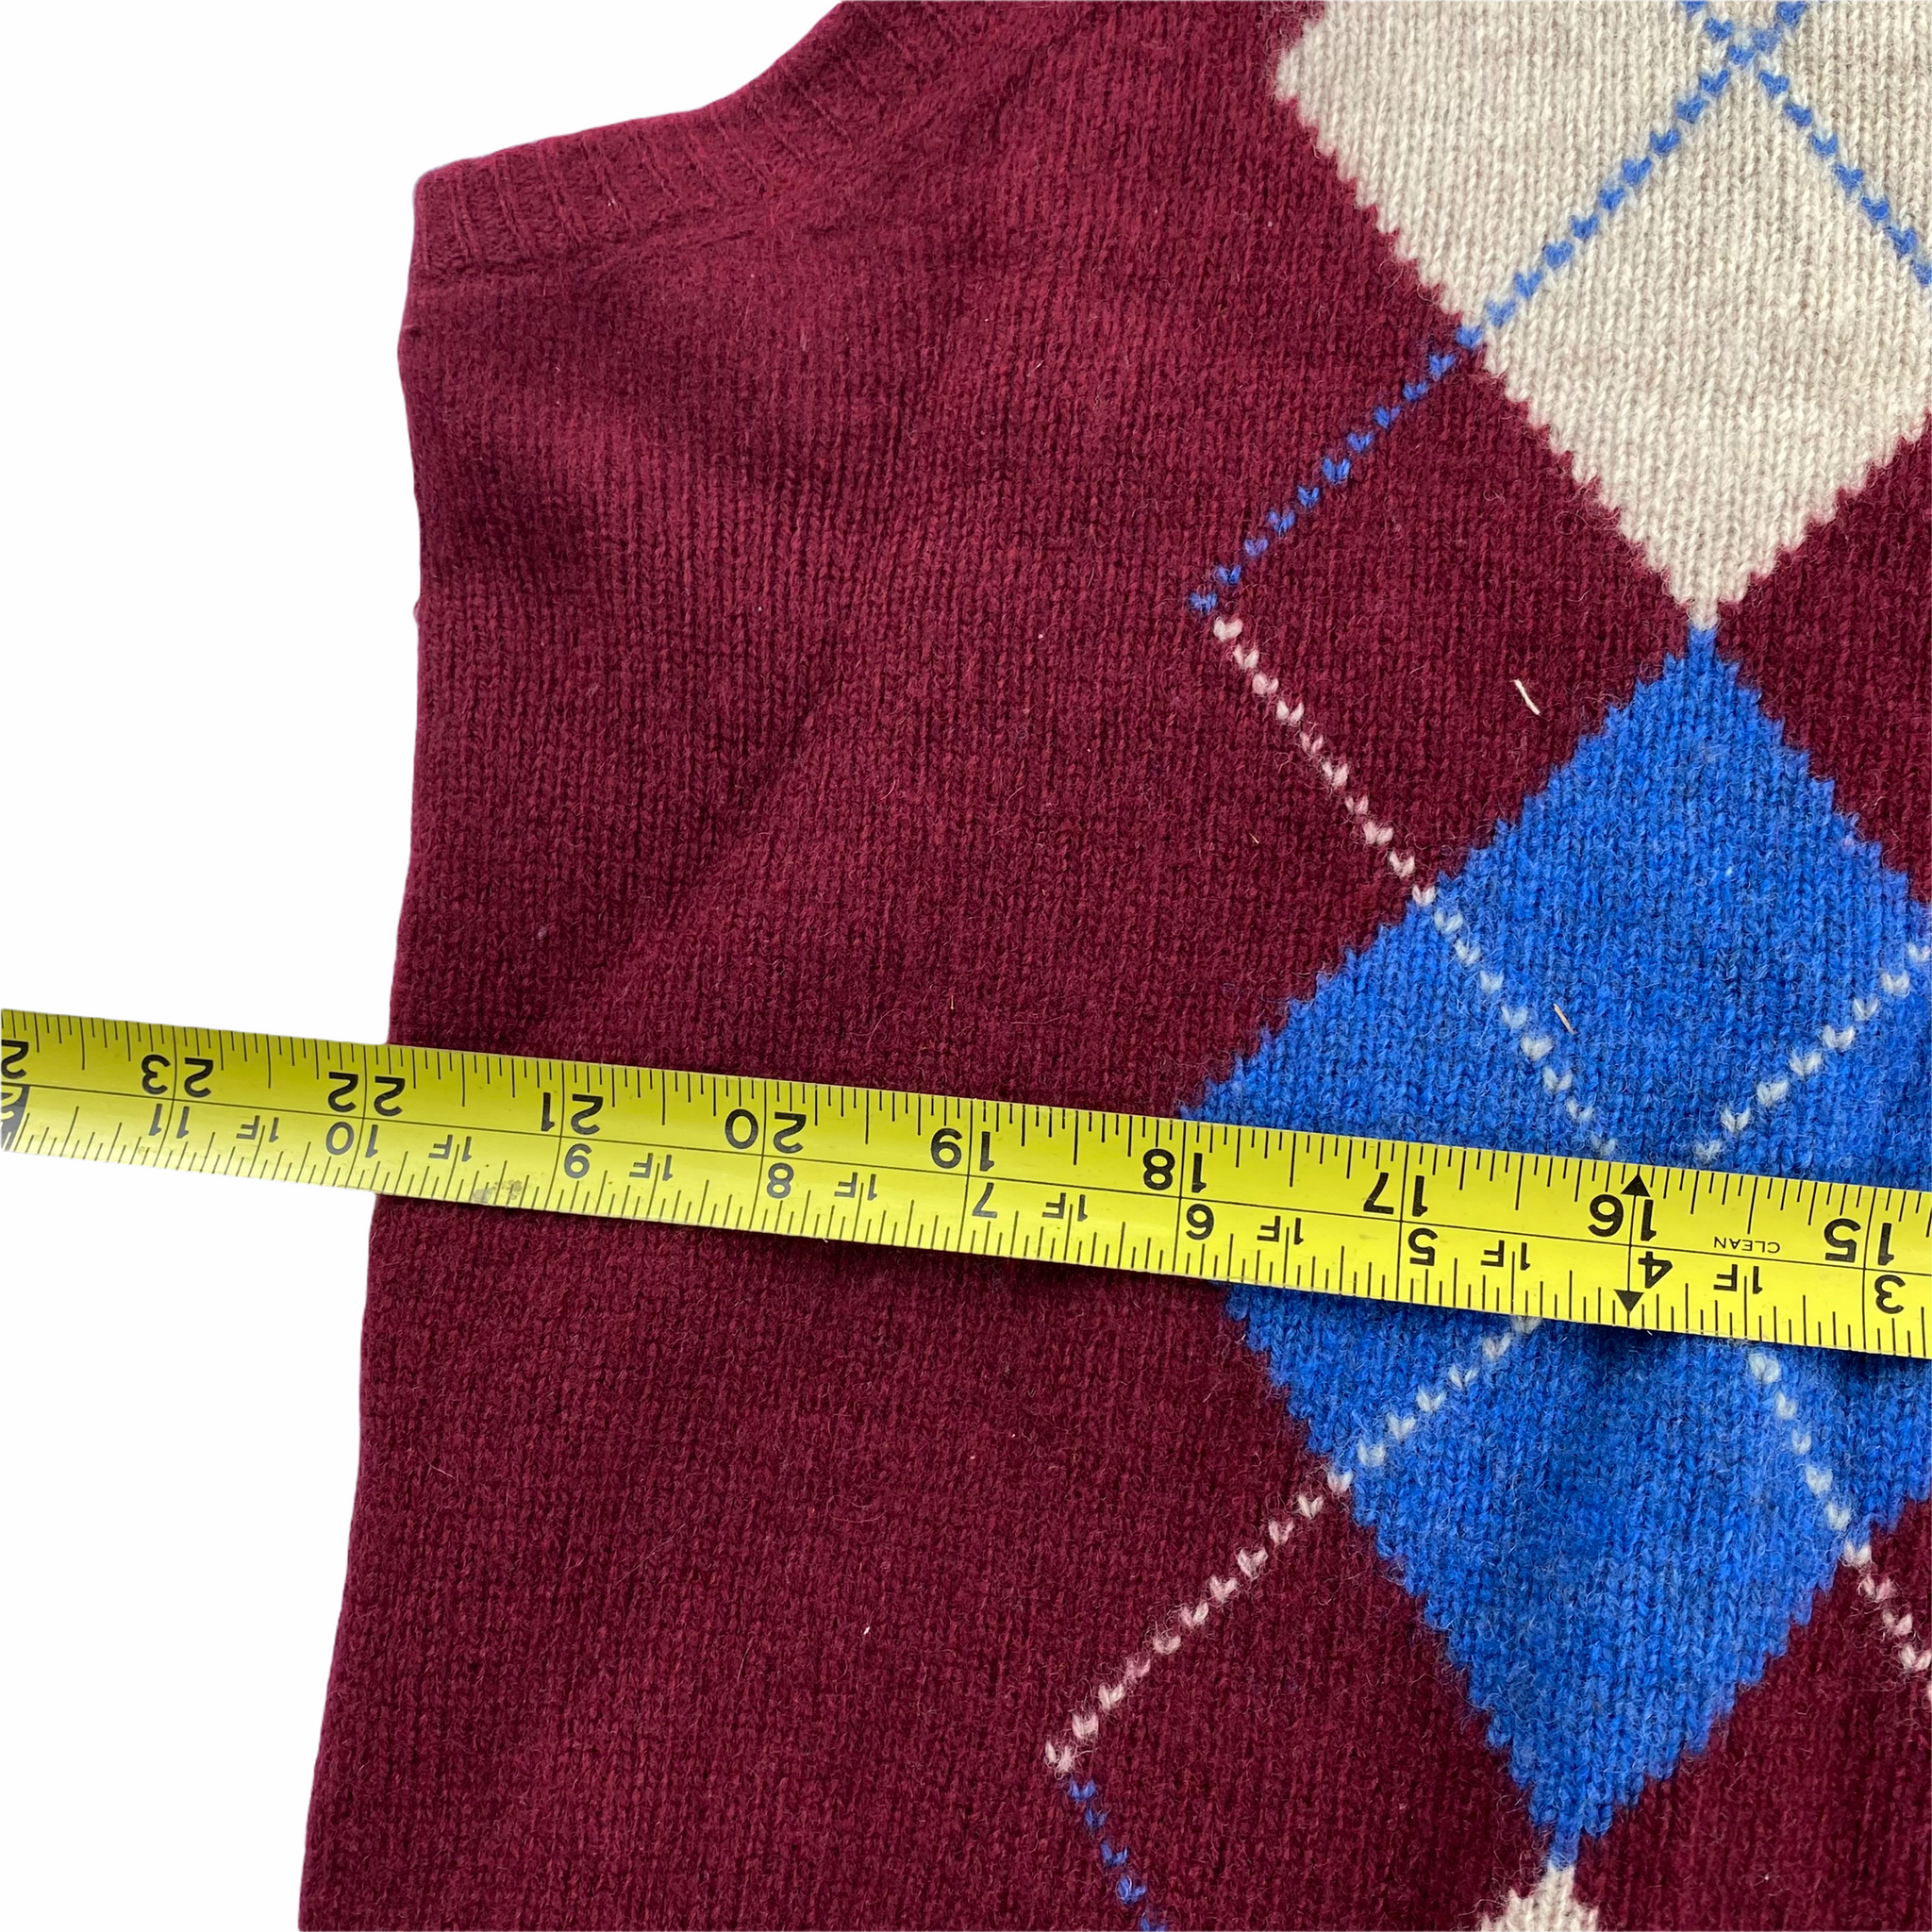 50s Argyle sweater vest. large